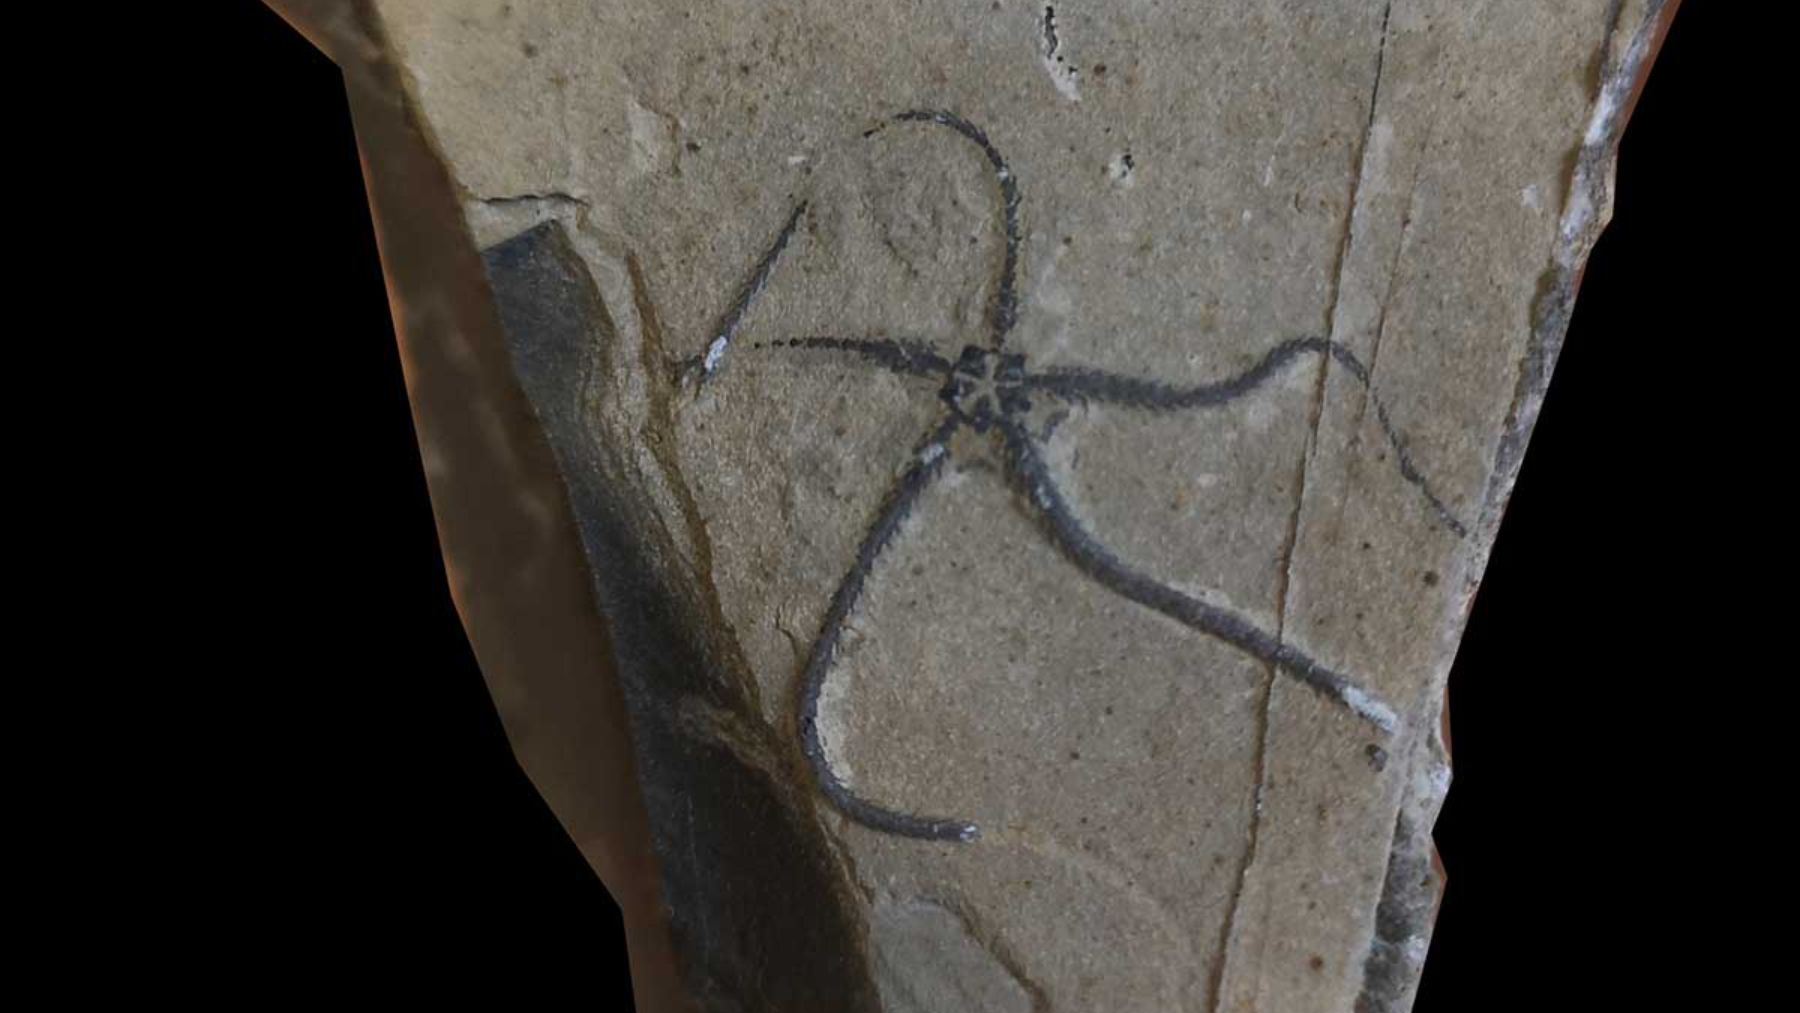 Descubre la especie de estrella de mar del jurásico que ha sido descubierta / Foto: @Museojurasico